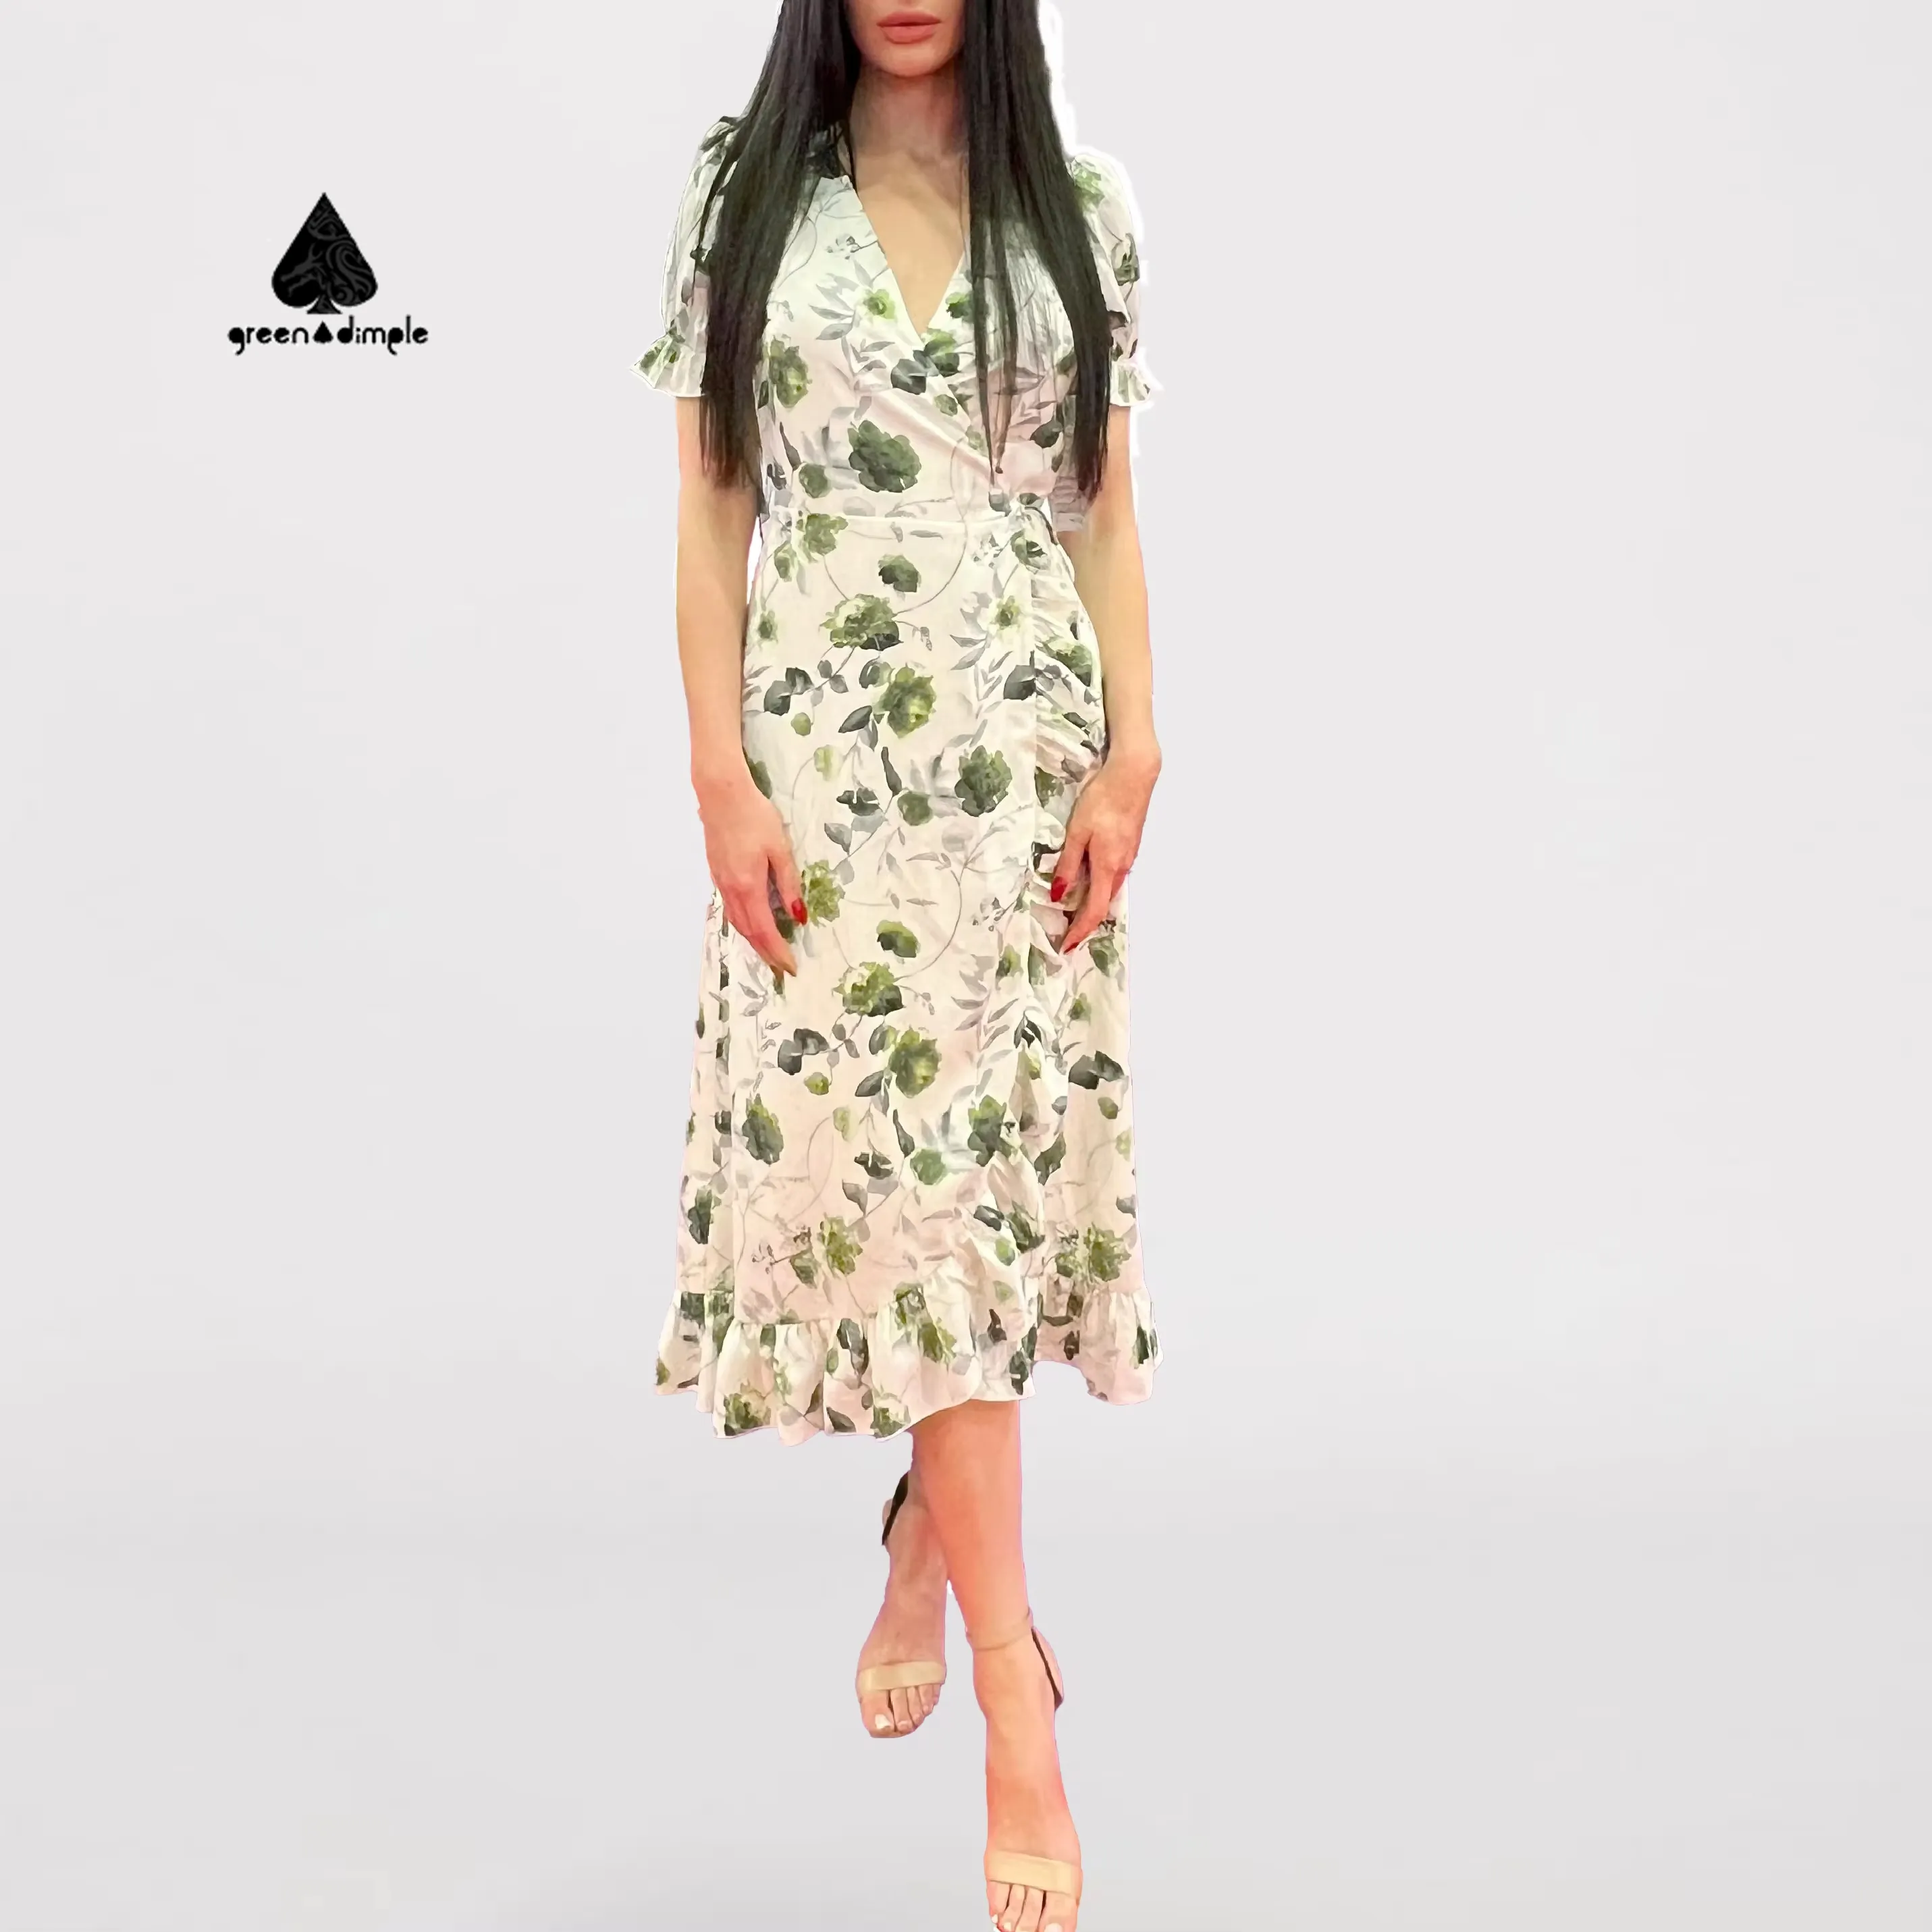 GREEN DIMPLE personalizado al por mayor verano Maxi Falda larga más tamaño casual ropa de mujer elegante moda volante floral Vestido de playa